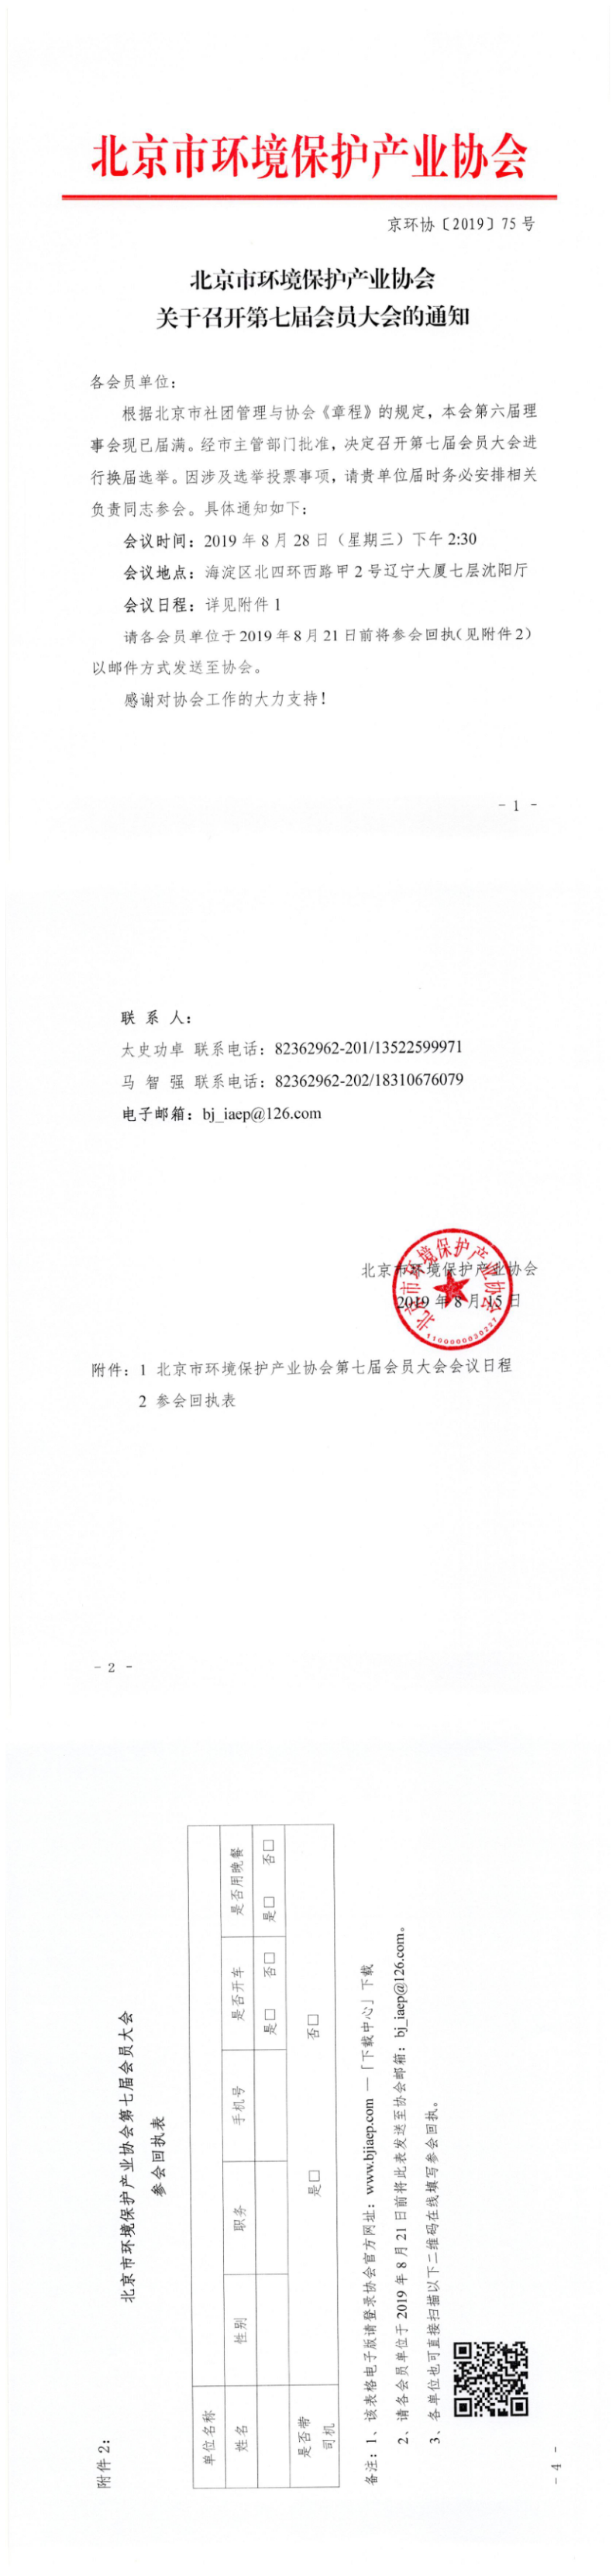 北京市环境保护产业协会关于召开第七届会员大会的通知.png